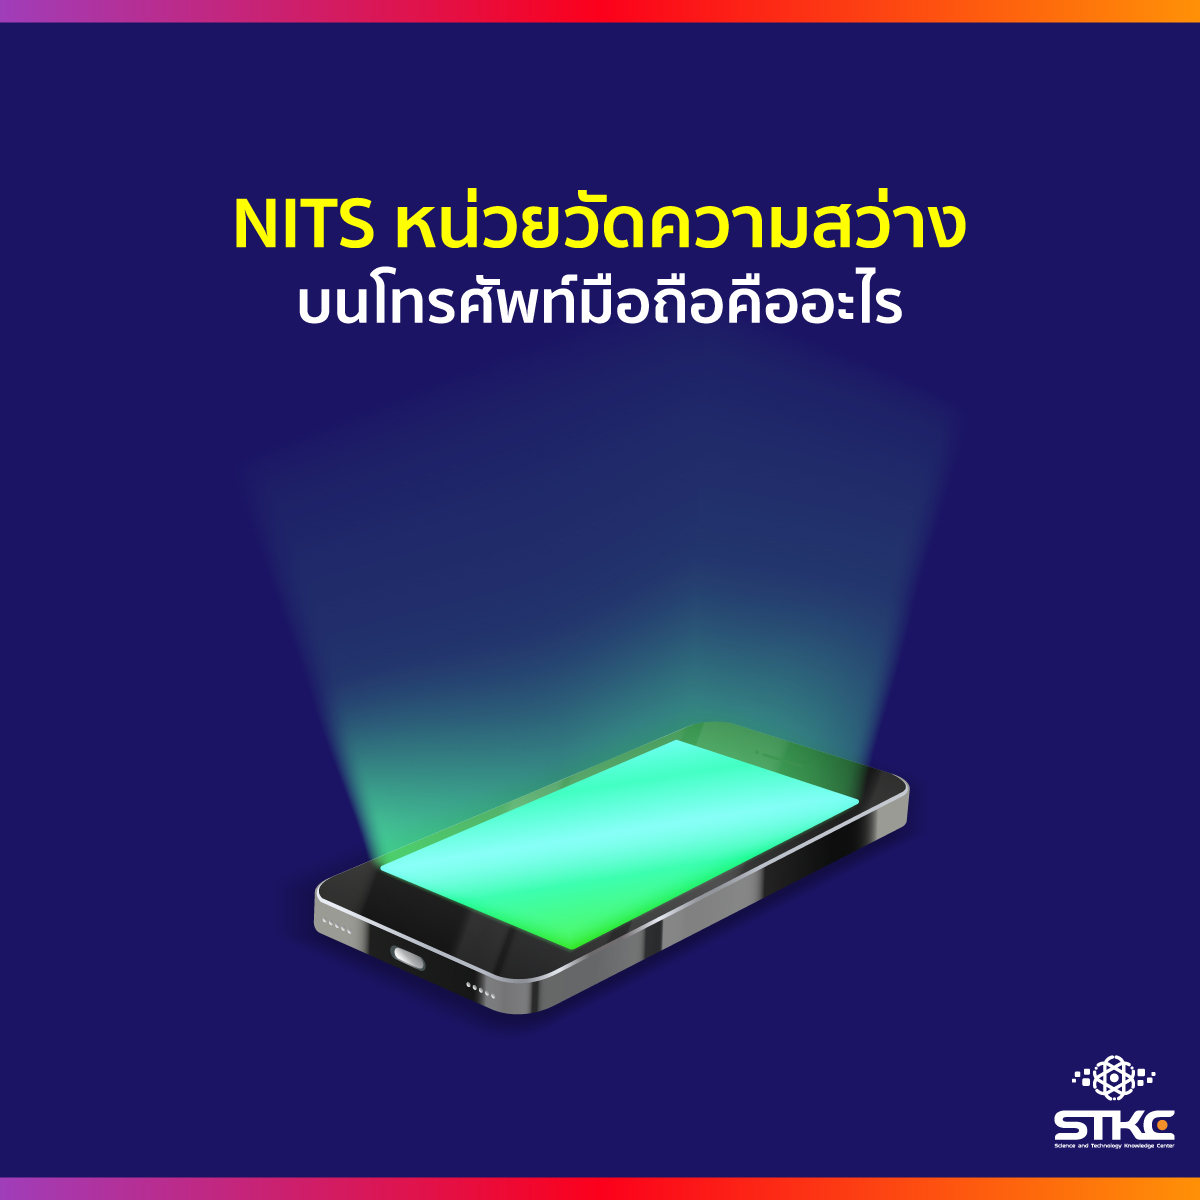 NITS หน่วยวัดความสว่างบนโทรศัพท์มือถือคืออะไร